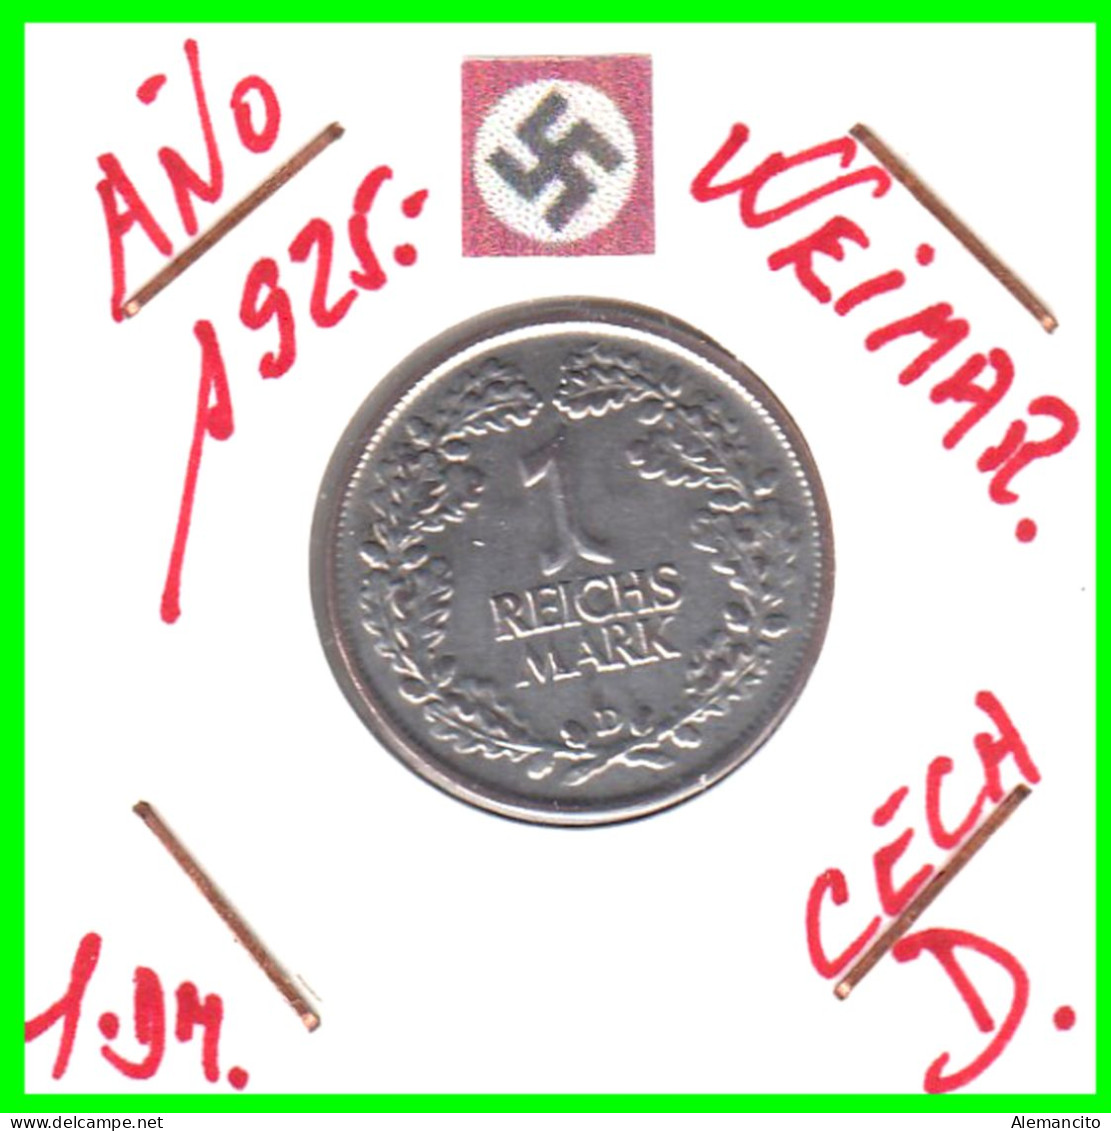 GERMANY REPÚBLICA DE WEIMAR 1 MARK ( 1925 CECA - D )  ( DEUTSCHES REICHSMARK KM # 44 ) - 1 Marco & 1 Reichsmark